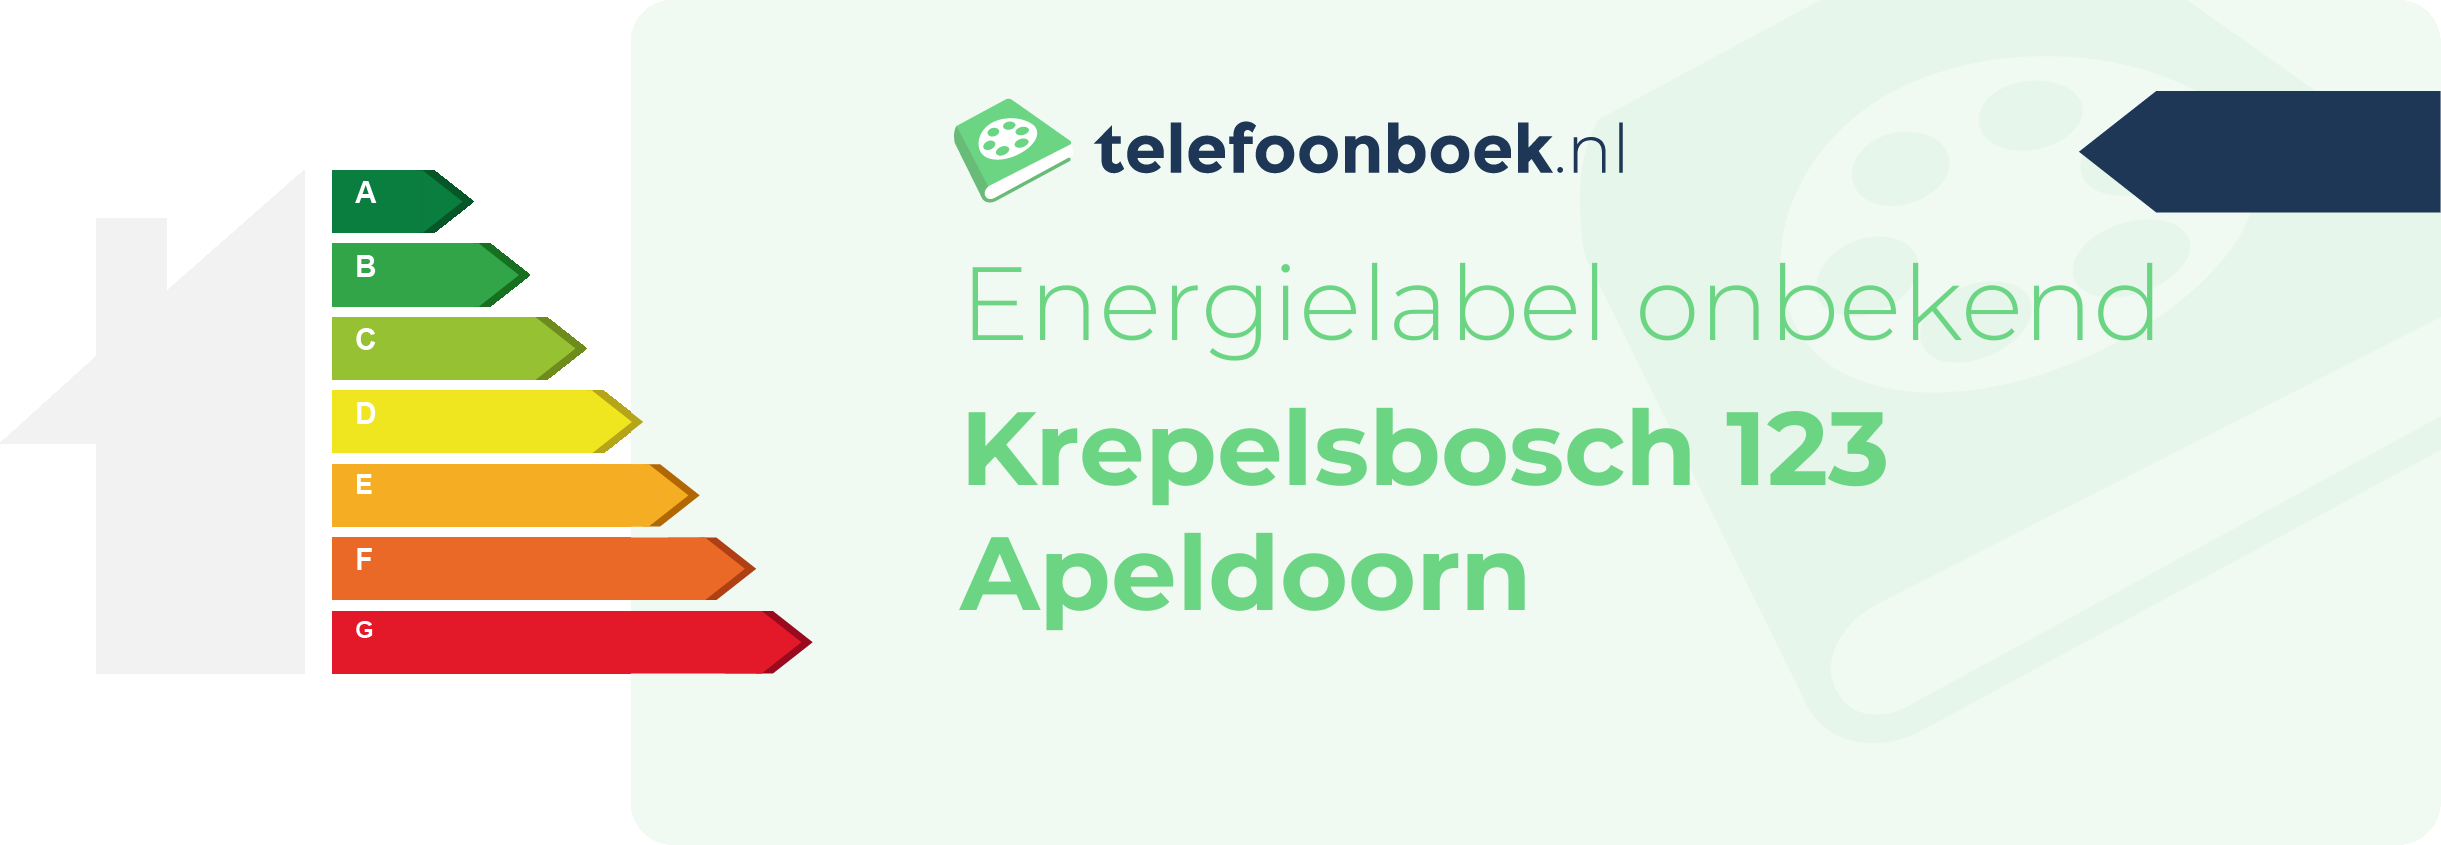 Energielabel Krepelsbosch 123 Apeldoorn